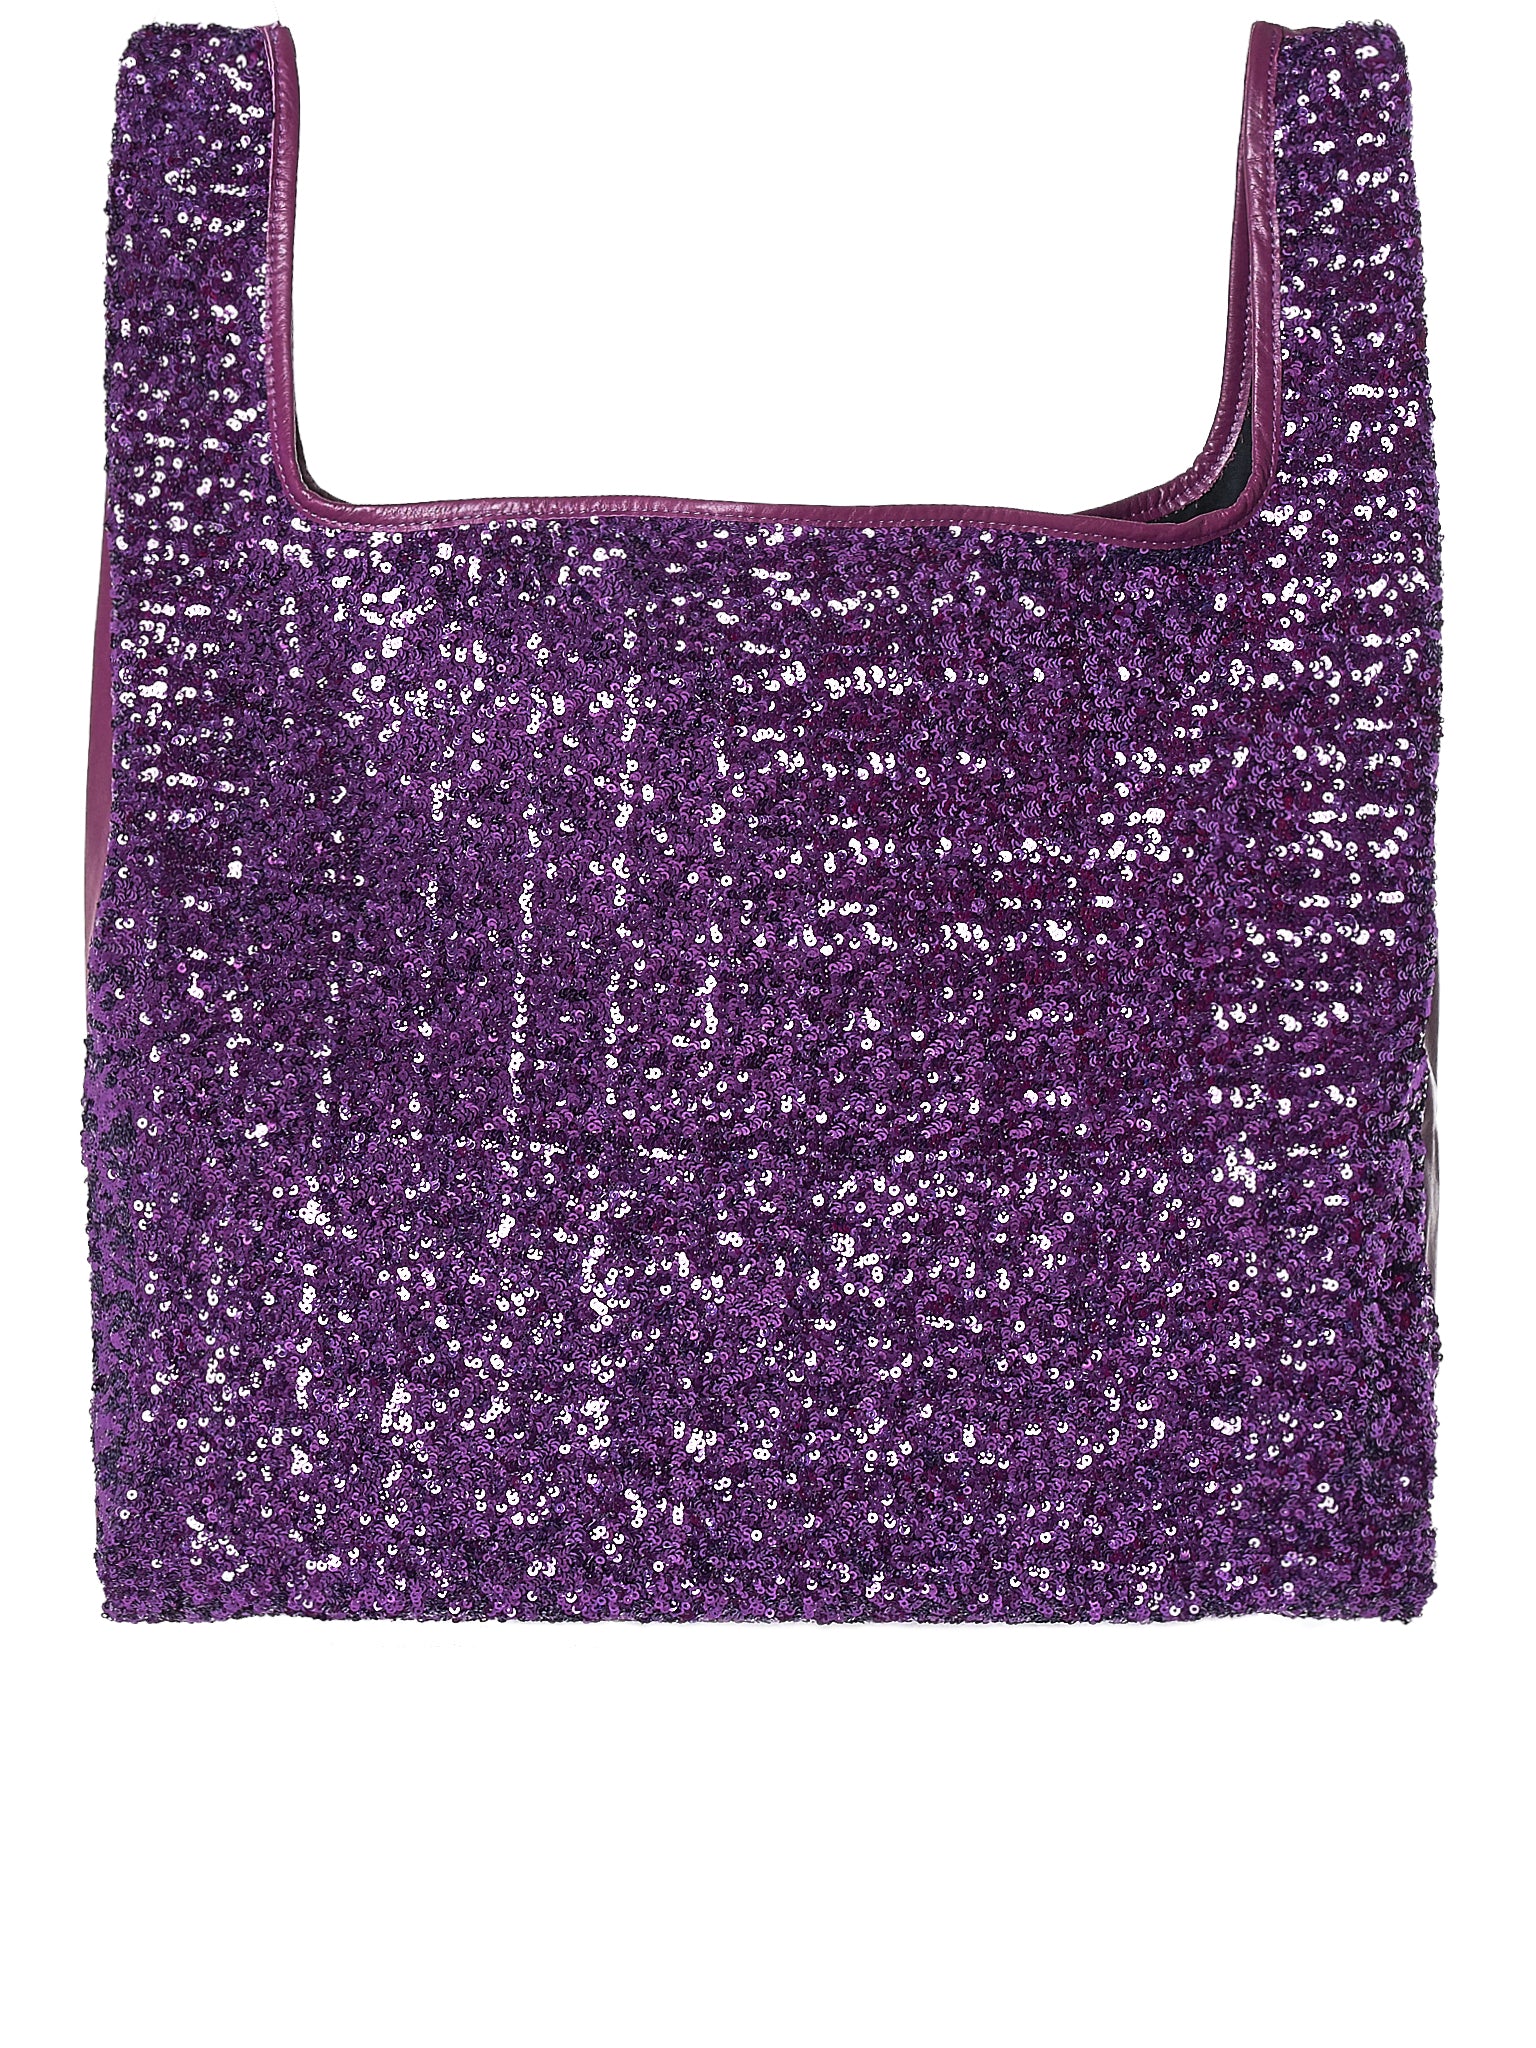 Sequined Tote Bag (JB-201-051-3-PURPLE)